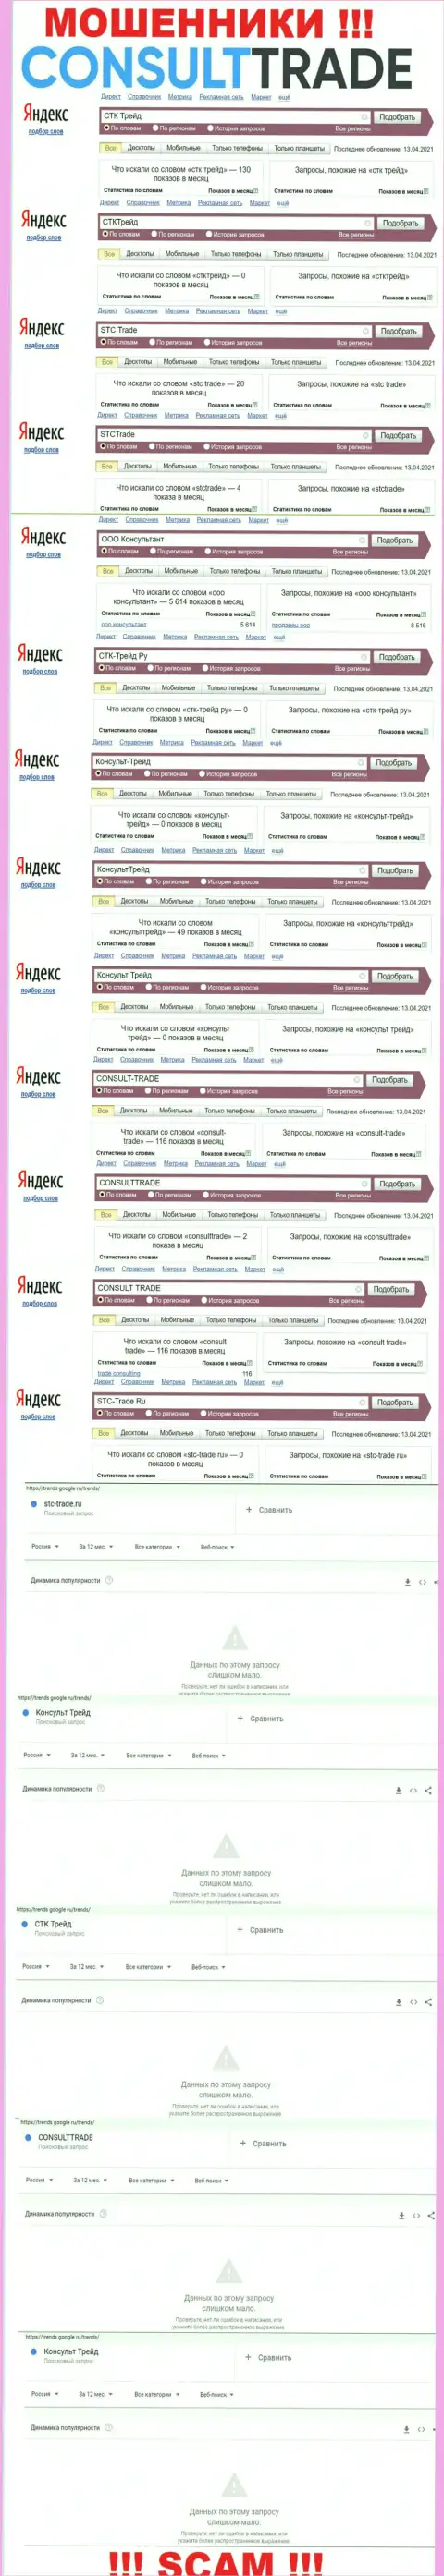 Скриншот результатов поисковых запросов по неправомерно действующей компании CONSULT-TRADE